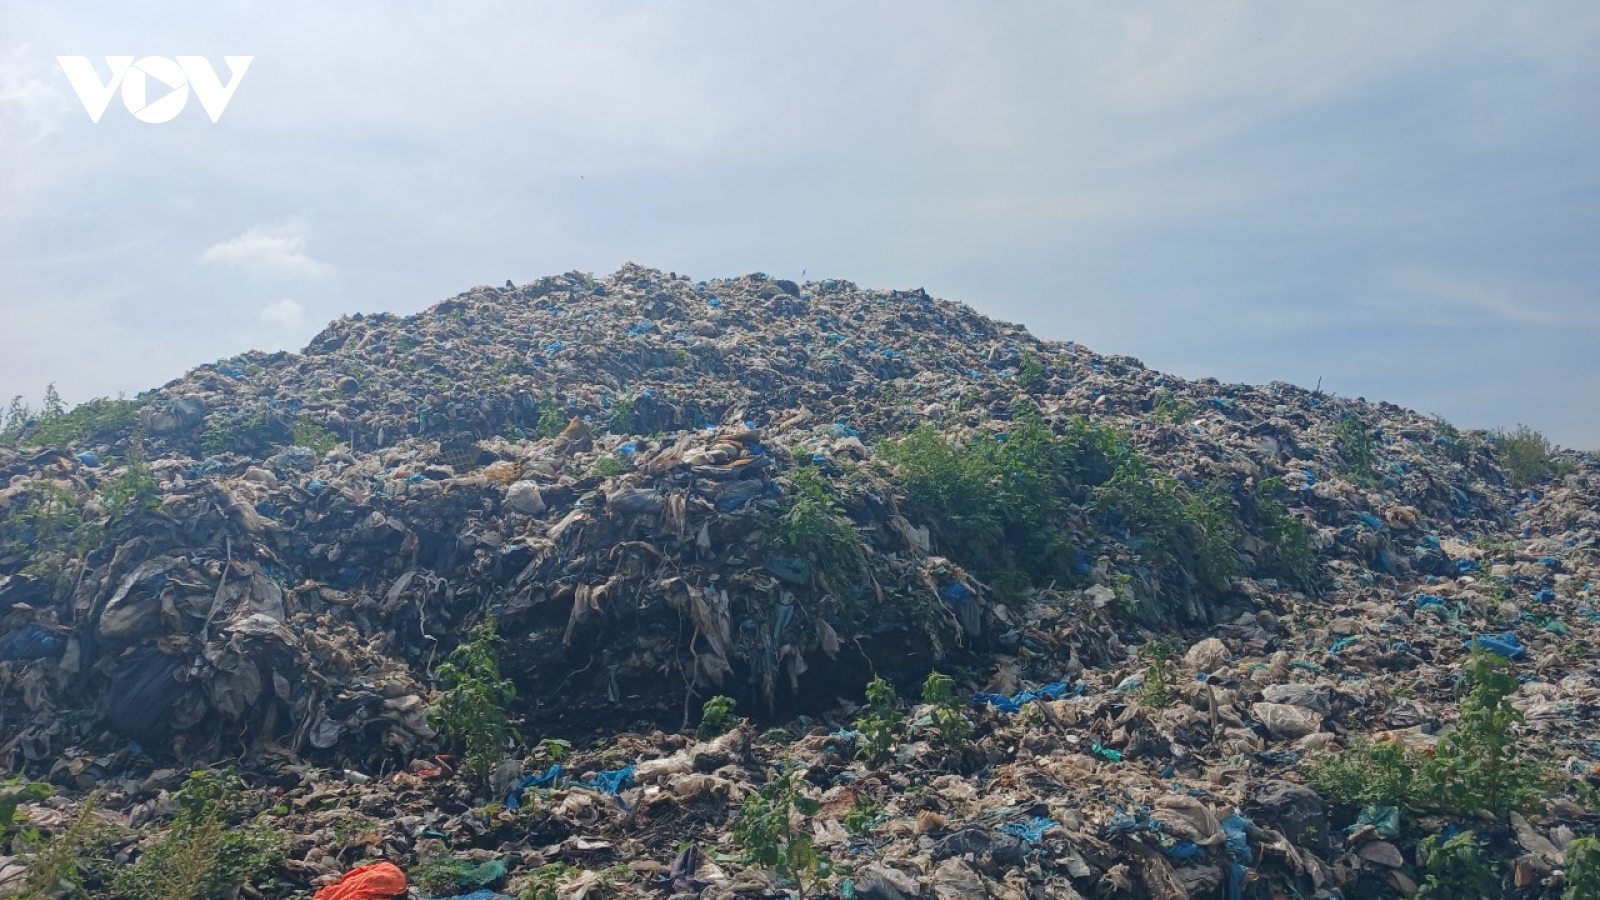 Tiền Giang đầu tư xây dựng nhà máy xử lý rác với kinh phí 640 tỷ đồng